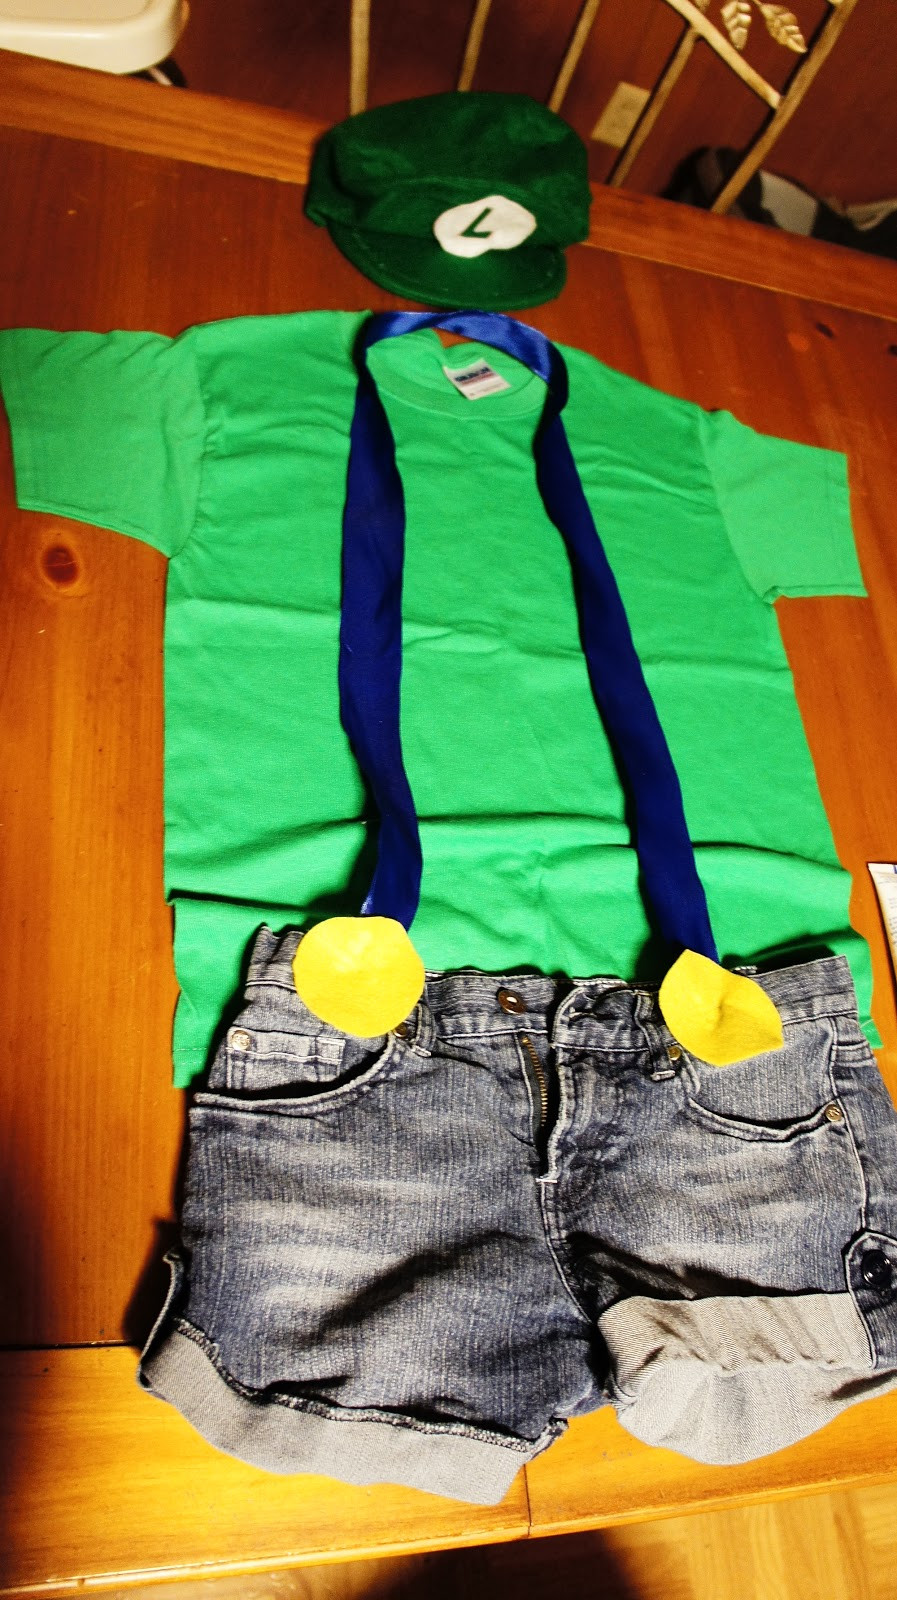 Best ideas about Luigi Costume DIY
. Save or Pin DIY Mario & Luigi Costumes Now.